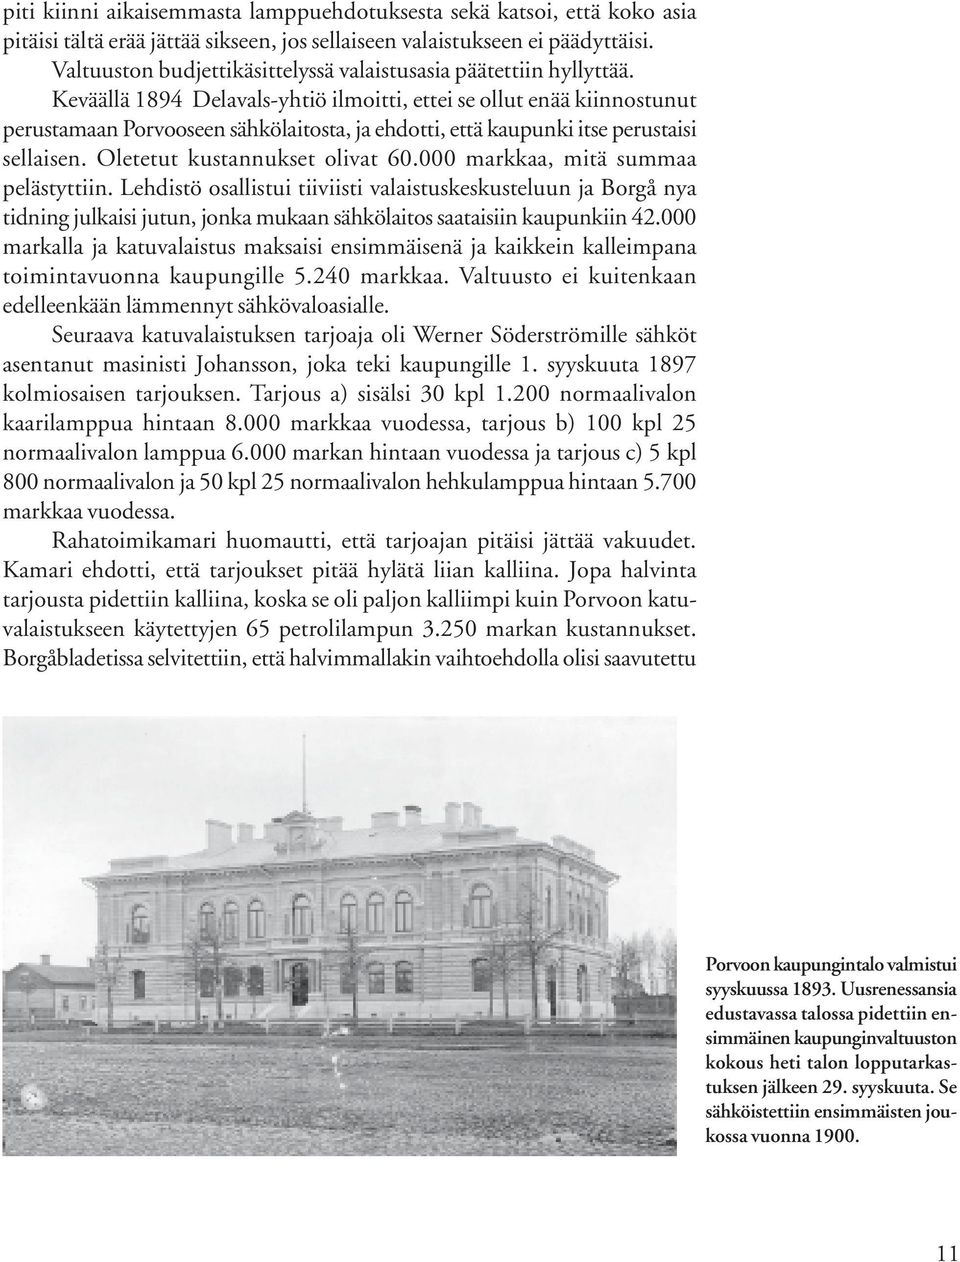 Keväällä 1894 Delavals-yhtiö ilmoitti, ettei se ollut enää kiinnostunut perustamaan Porvooseen sähkölaitosta, ja ehdotti, että kaupunki itse perustaisi sellaisen. Oletetut kustannukset olivat 60.